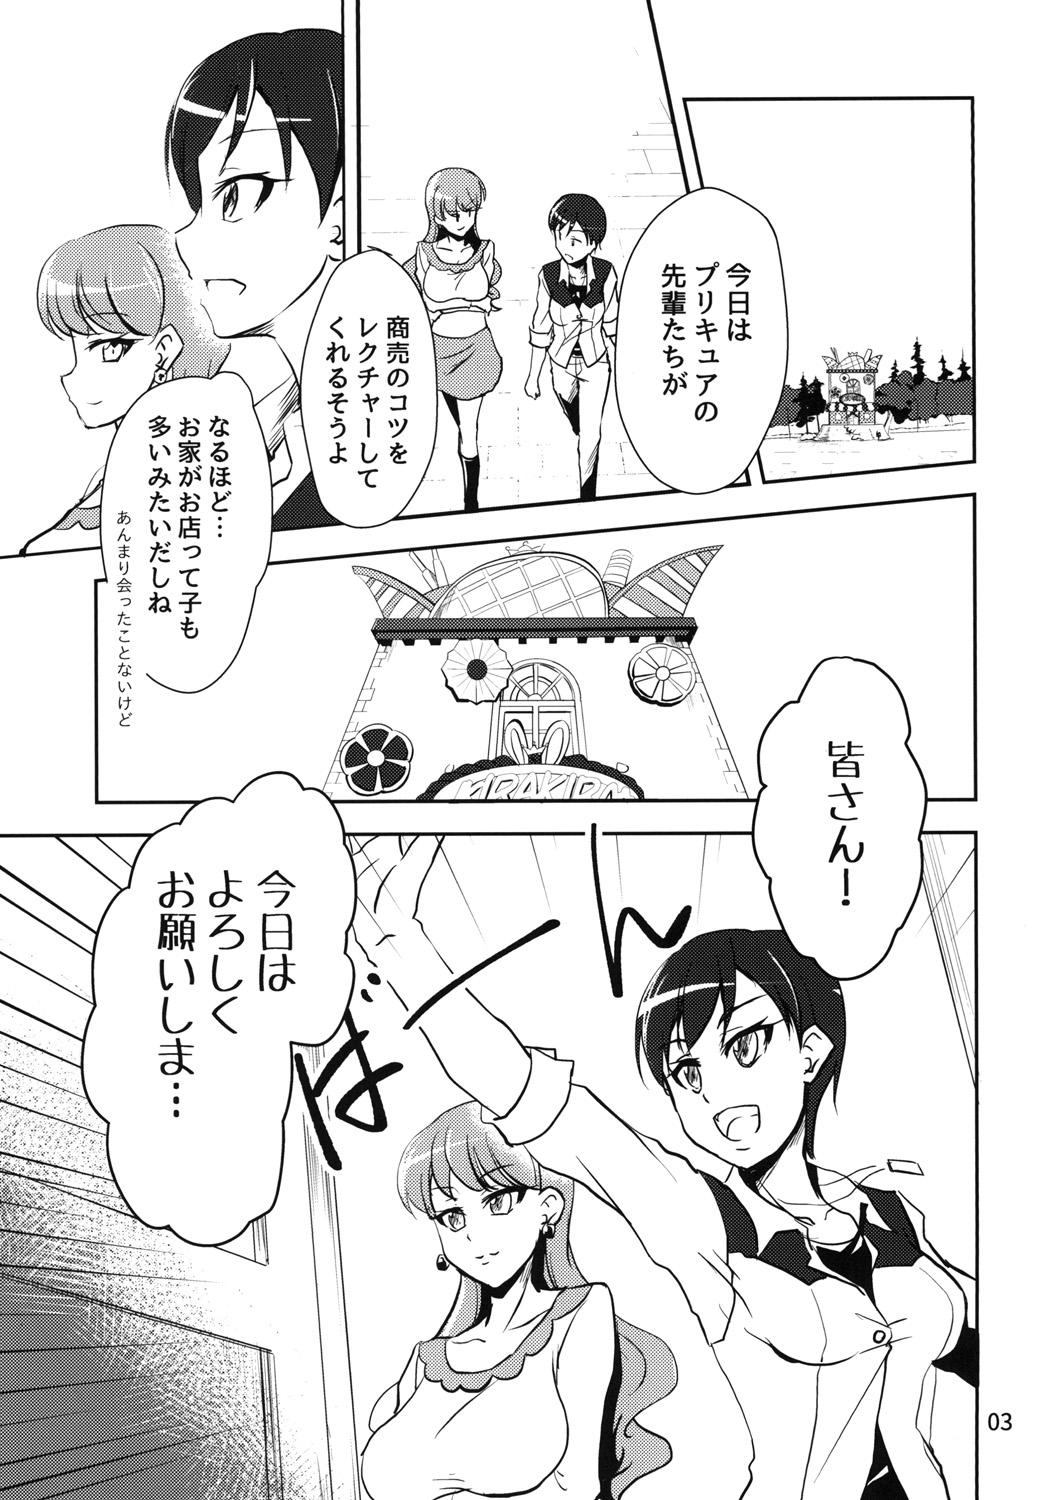 Ball Licking NamaCure - Kirakira precure a la mode Bribe - Page 3